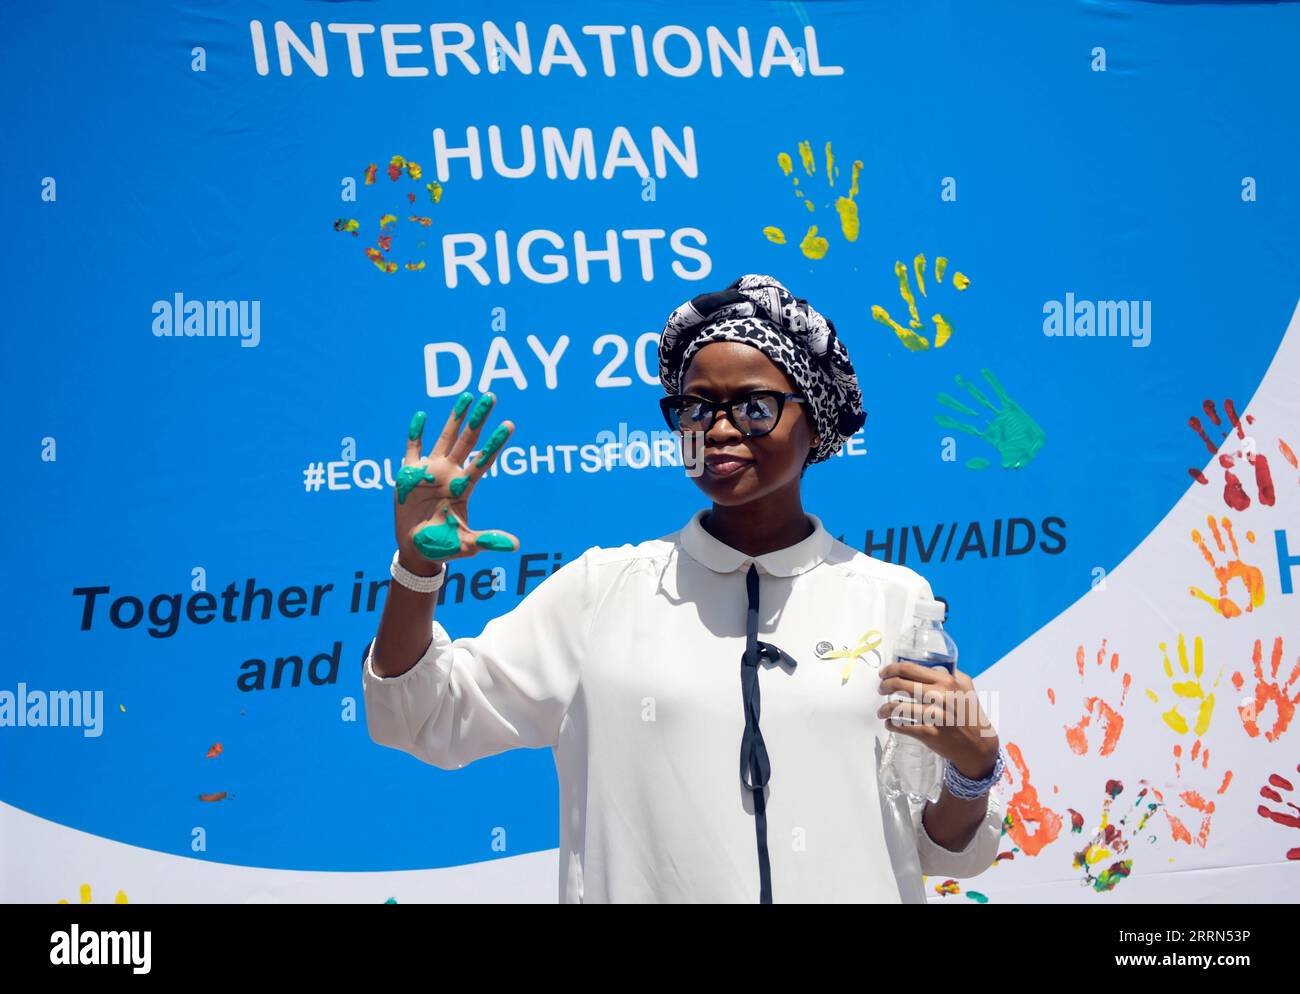 221210 -- GABORONE, 10. Dezember 2022 -- Eine Frau zeigt ihre bemalte Hand während einer öffentlichen Veranstaltung zum Gedenken an den Tag der Menschenrechte in Gaborone, Botswana am 9. Dezember 2022. Der Tag der Menschenrechte findet jedes Jahr am 10. Dezember statt, dem Tag, an dem die Generalversammlung der Vereinten Nationen 1948 die Allgemeine Erklärung der Menschenrechte verabschiedete. Foto von /Xinhua BOTSWANA-INT L MENSCHENRECHTSTAG-GEDENKEN TshekisoxTebalo PUBLICATIONxNOTxINxCHN Stockfoto